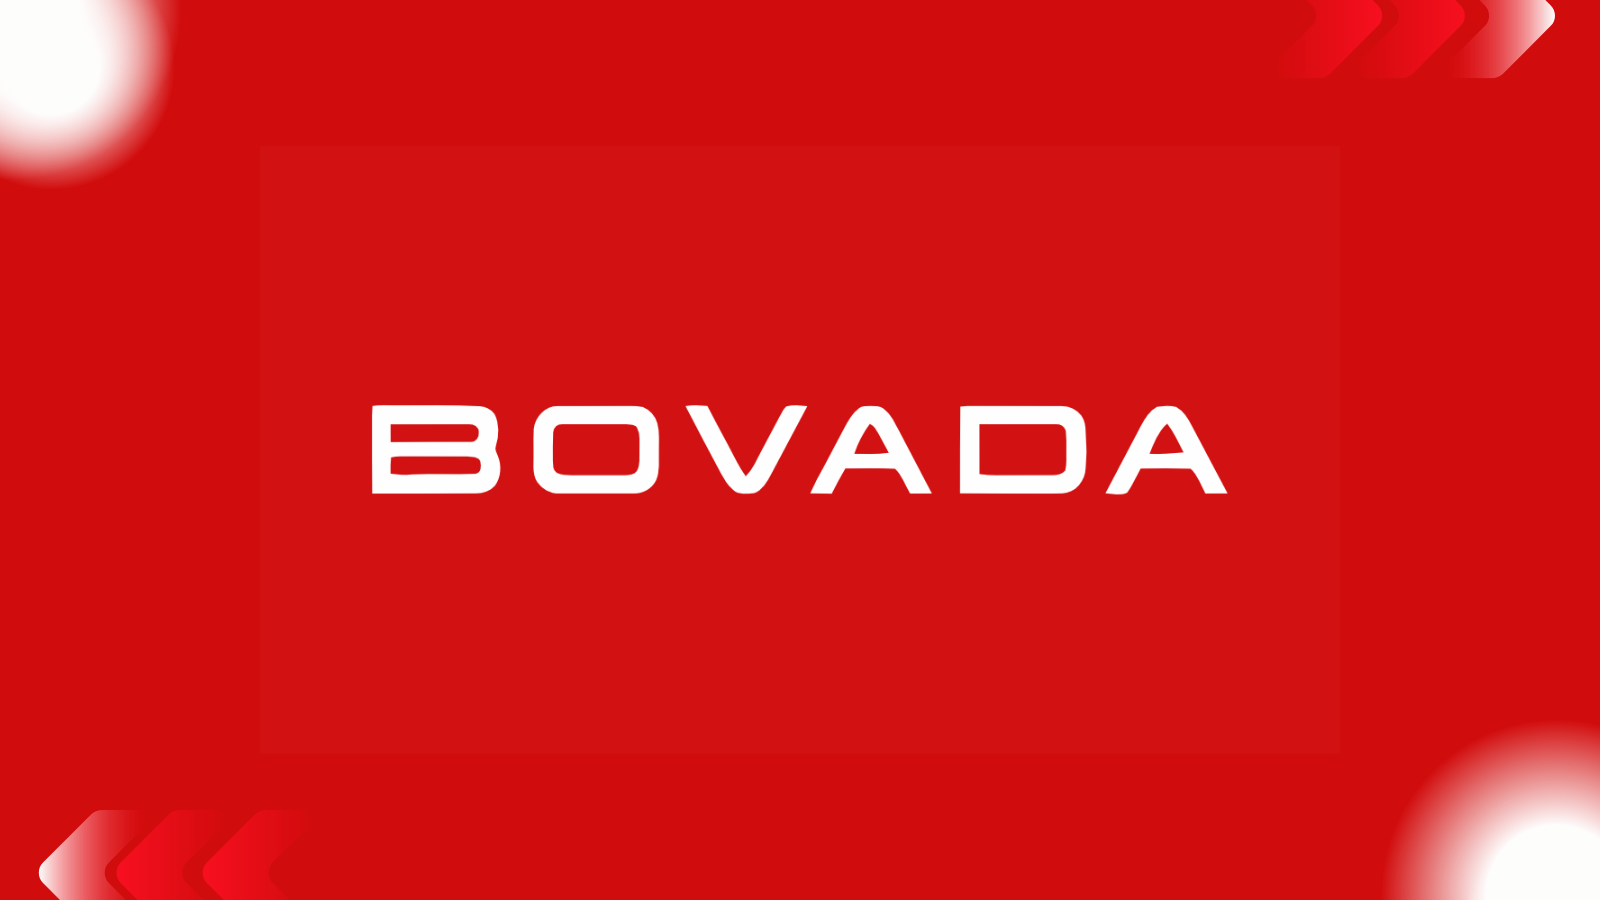 bovada live dealer review